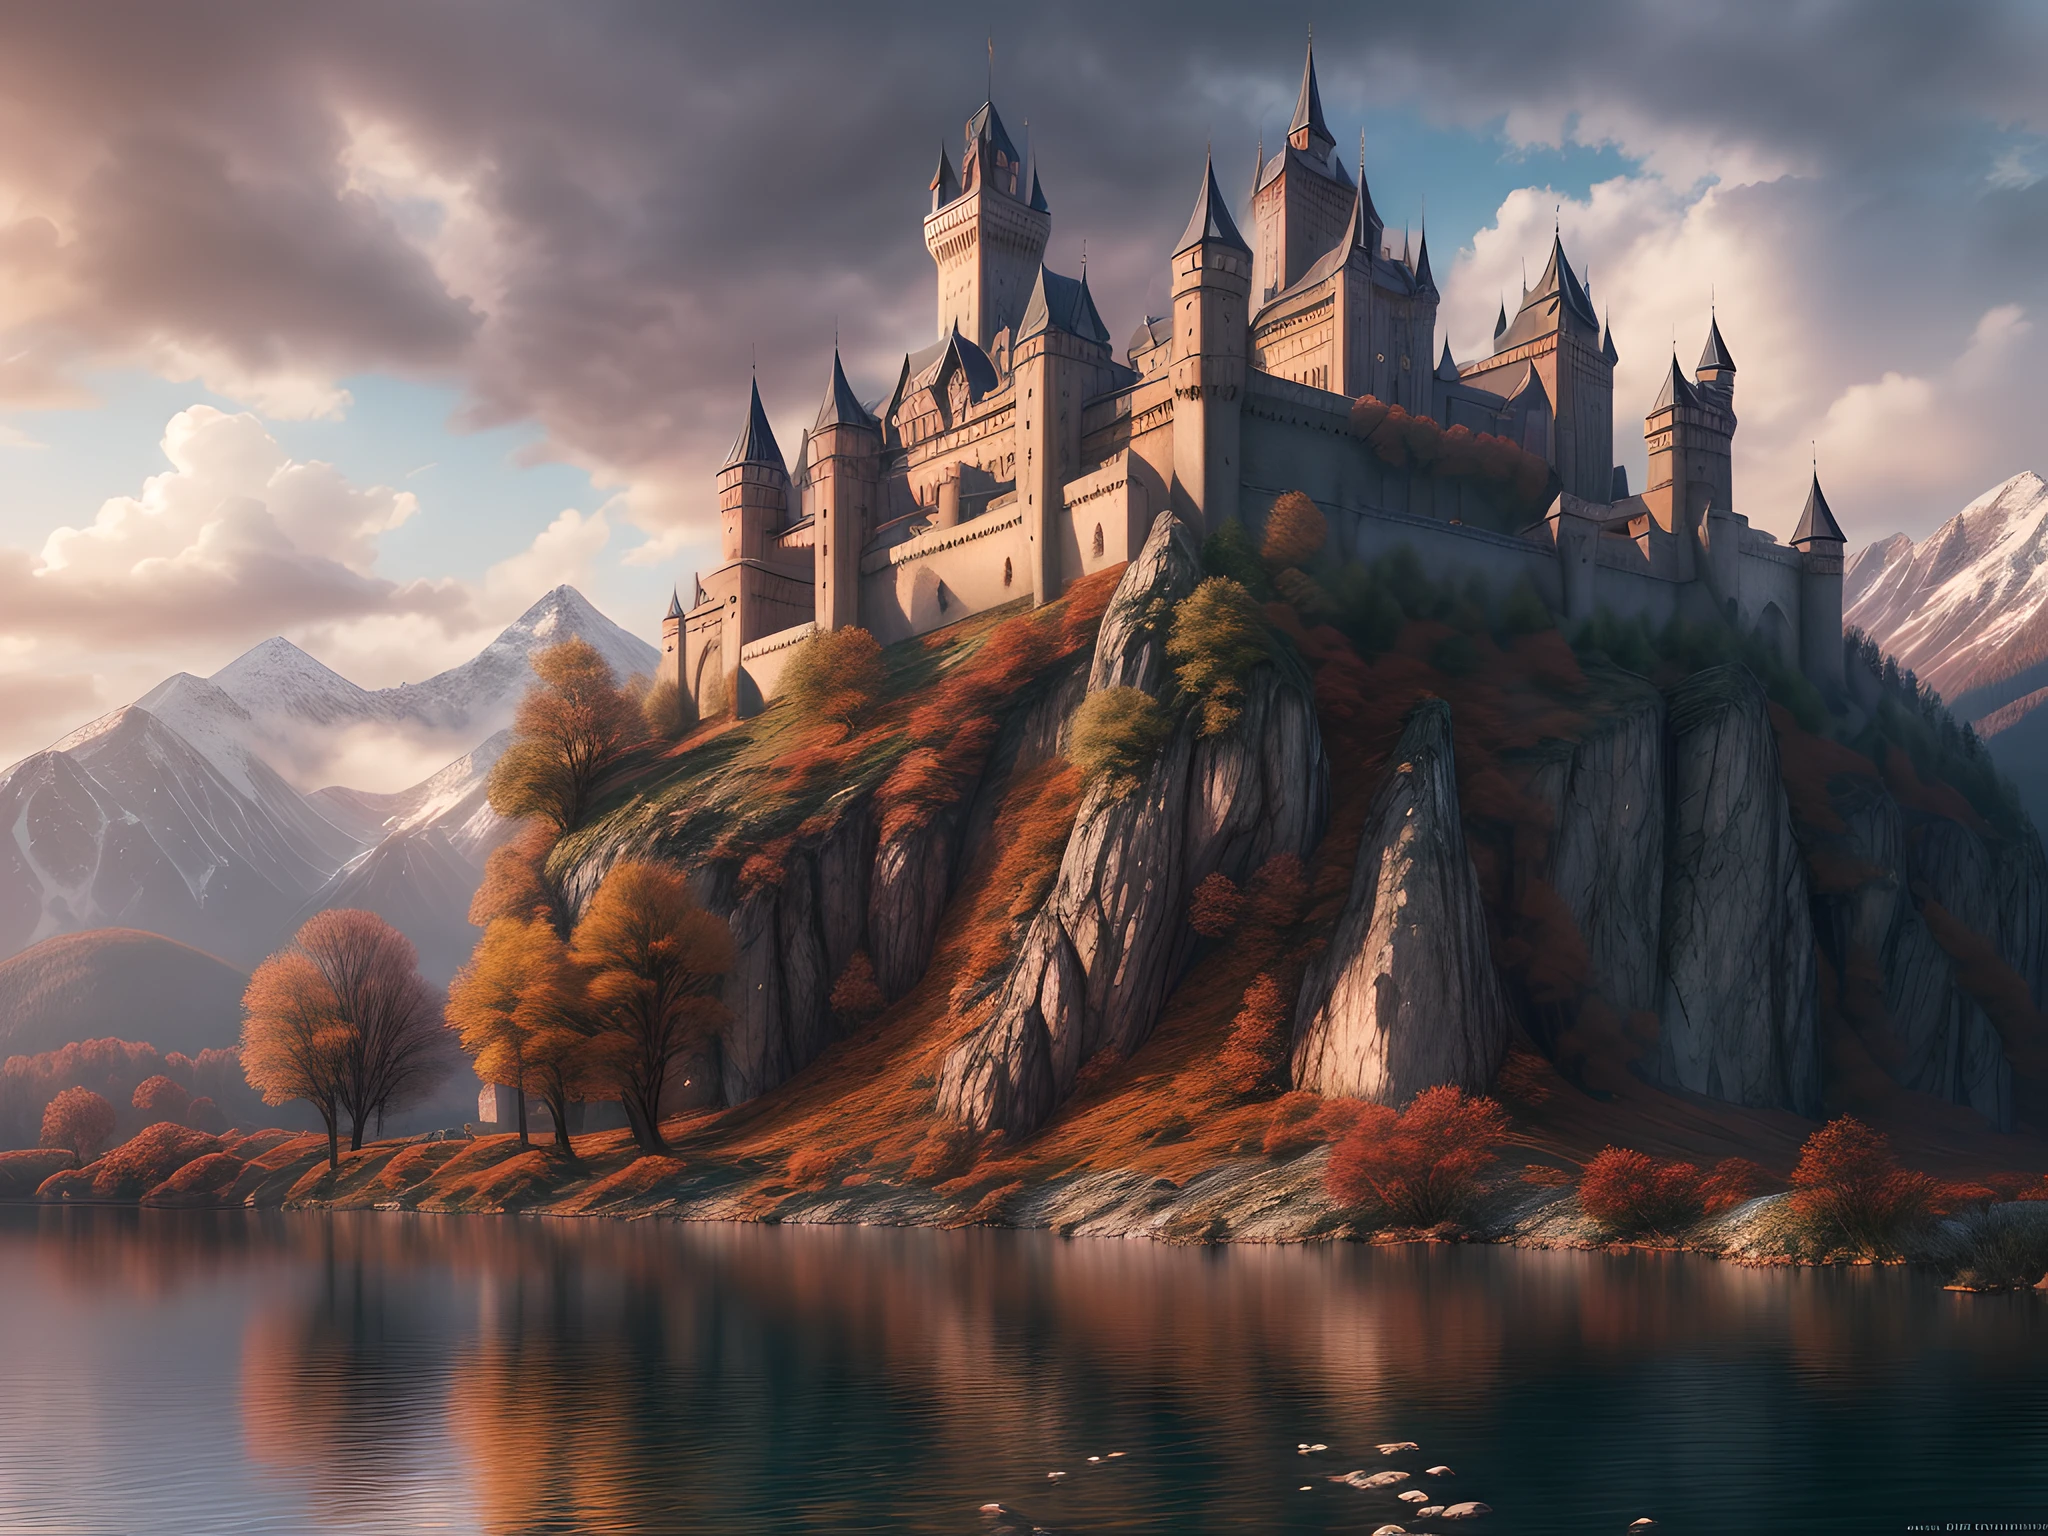 幻想藝術, RPG 艺术, 摄影, 國家地理品質圖片, 得獎, (最好详细: 1.5), (最好的品質: 1.5) 黎明時湖邊一座史詩般的 1solocastle 的照片, 它是一座中世紀城堡，它是藝術大師, 最先進的軍事建築, 非常適合保衛其國王, 雄偉的城堡,  有 (4 座塔: 1.2), (巨大的牆壁: 1.2), (外堡: 1.2), (旗幟: 1.2), ( 一座橋: 1.2), (橫幅高高飄揚: 1.3)整個城堡倒映在湖水中，形成完美的影像 (最好的細節, 最好的品質: 1.5), 湖面平靜而平靜, 天亮了, 太陽正在升起, 天空中有一些輕雲, 和太陽光線, behind the castle there is a missive snowy mountain as background 最好的品質, (非常詳細), 超广角拍摄, 照片寫實主義, 景深, 超現實, 2.5 渲染,